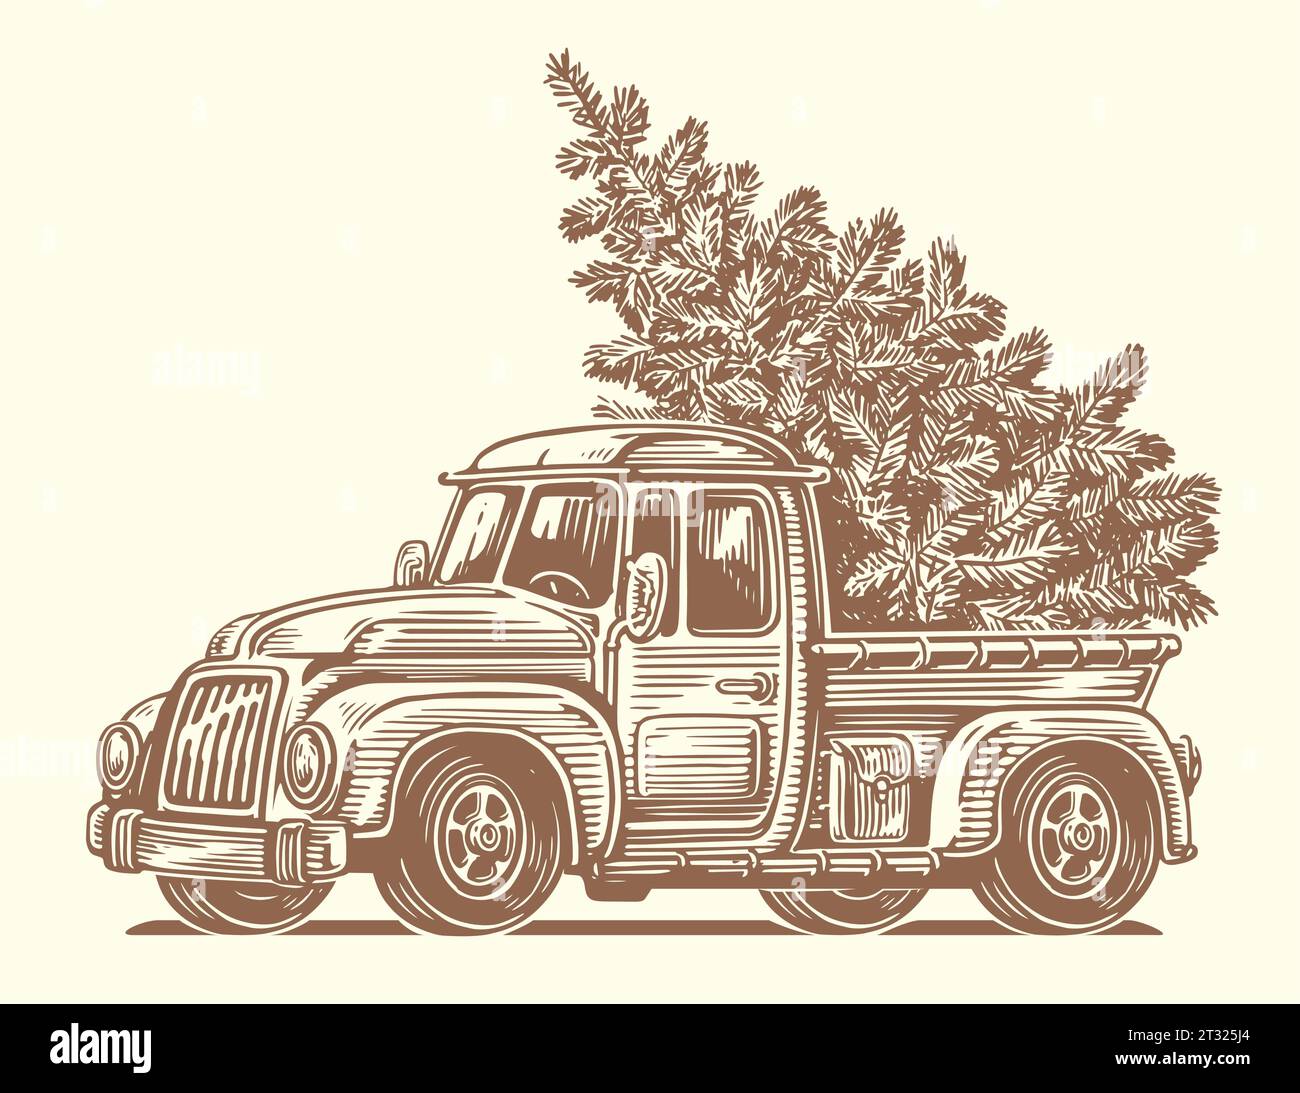 Retro-Truck und Weihnachtsbaum auf der Rückseite eines Autos. Happy Holidays Skizze Vektor Illustration Stock Vektor